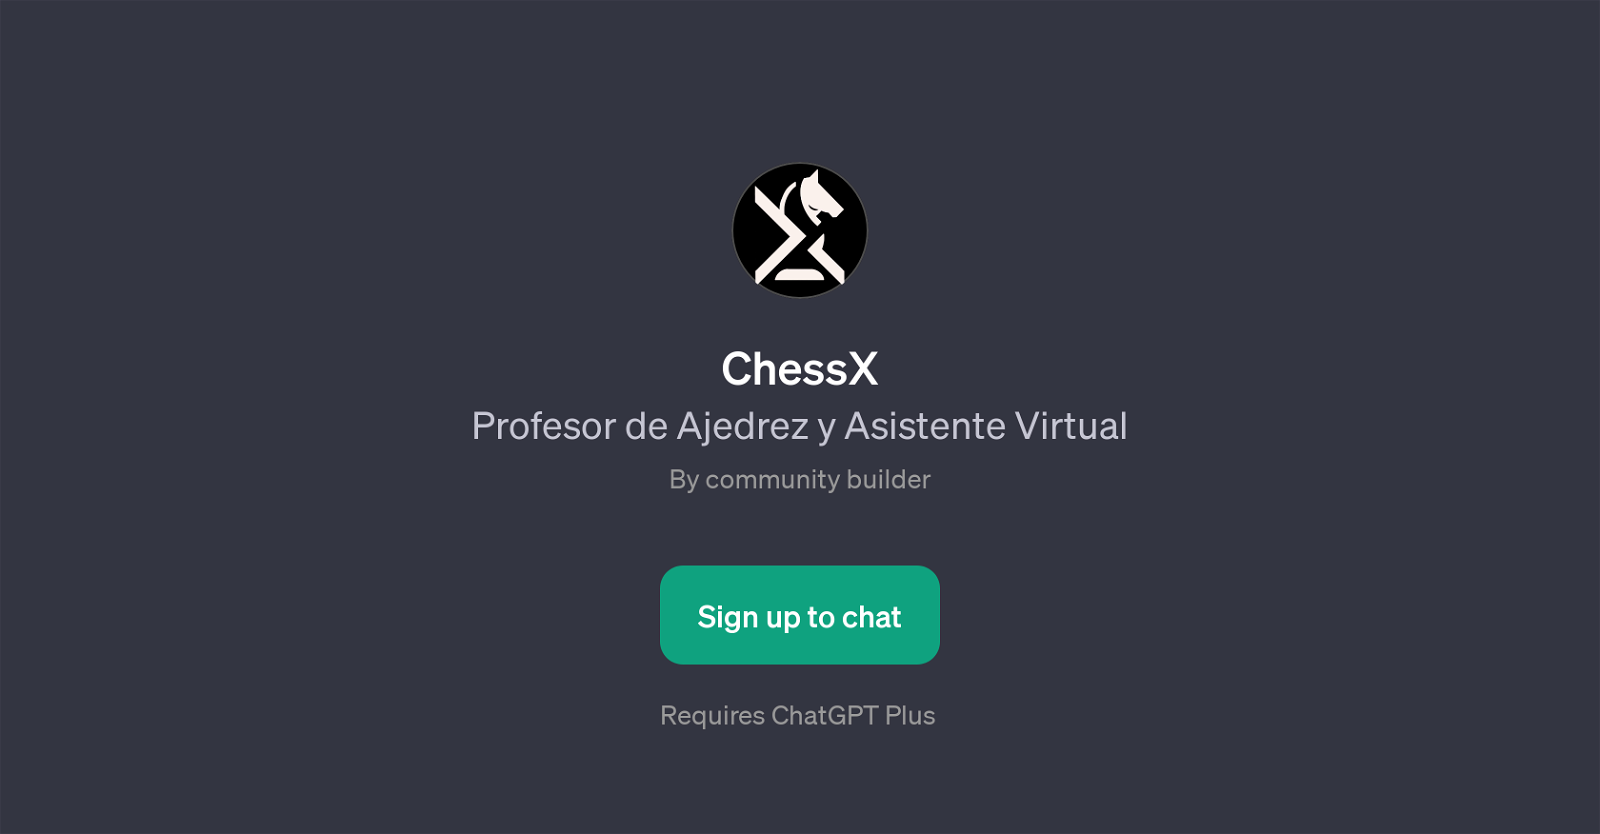 ChessX website